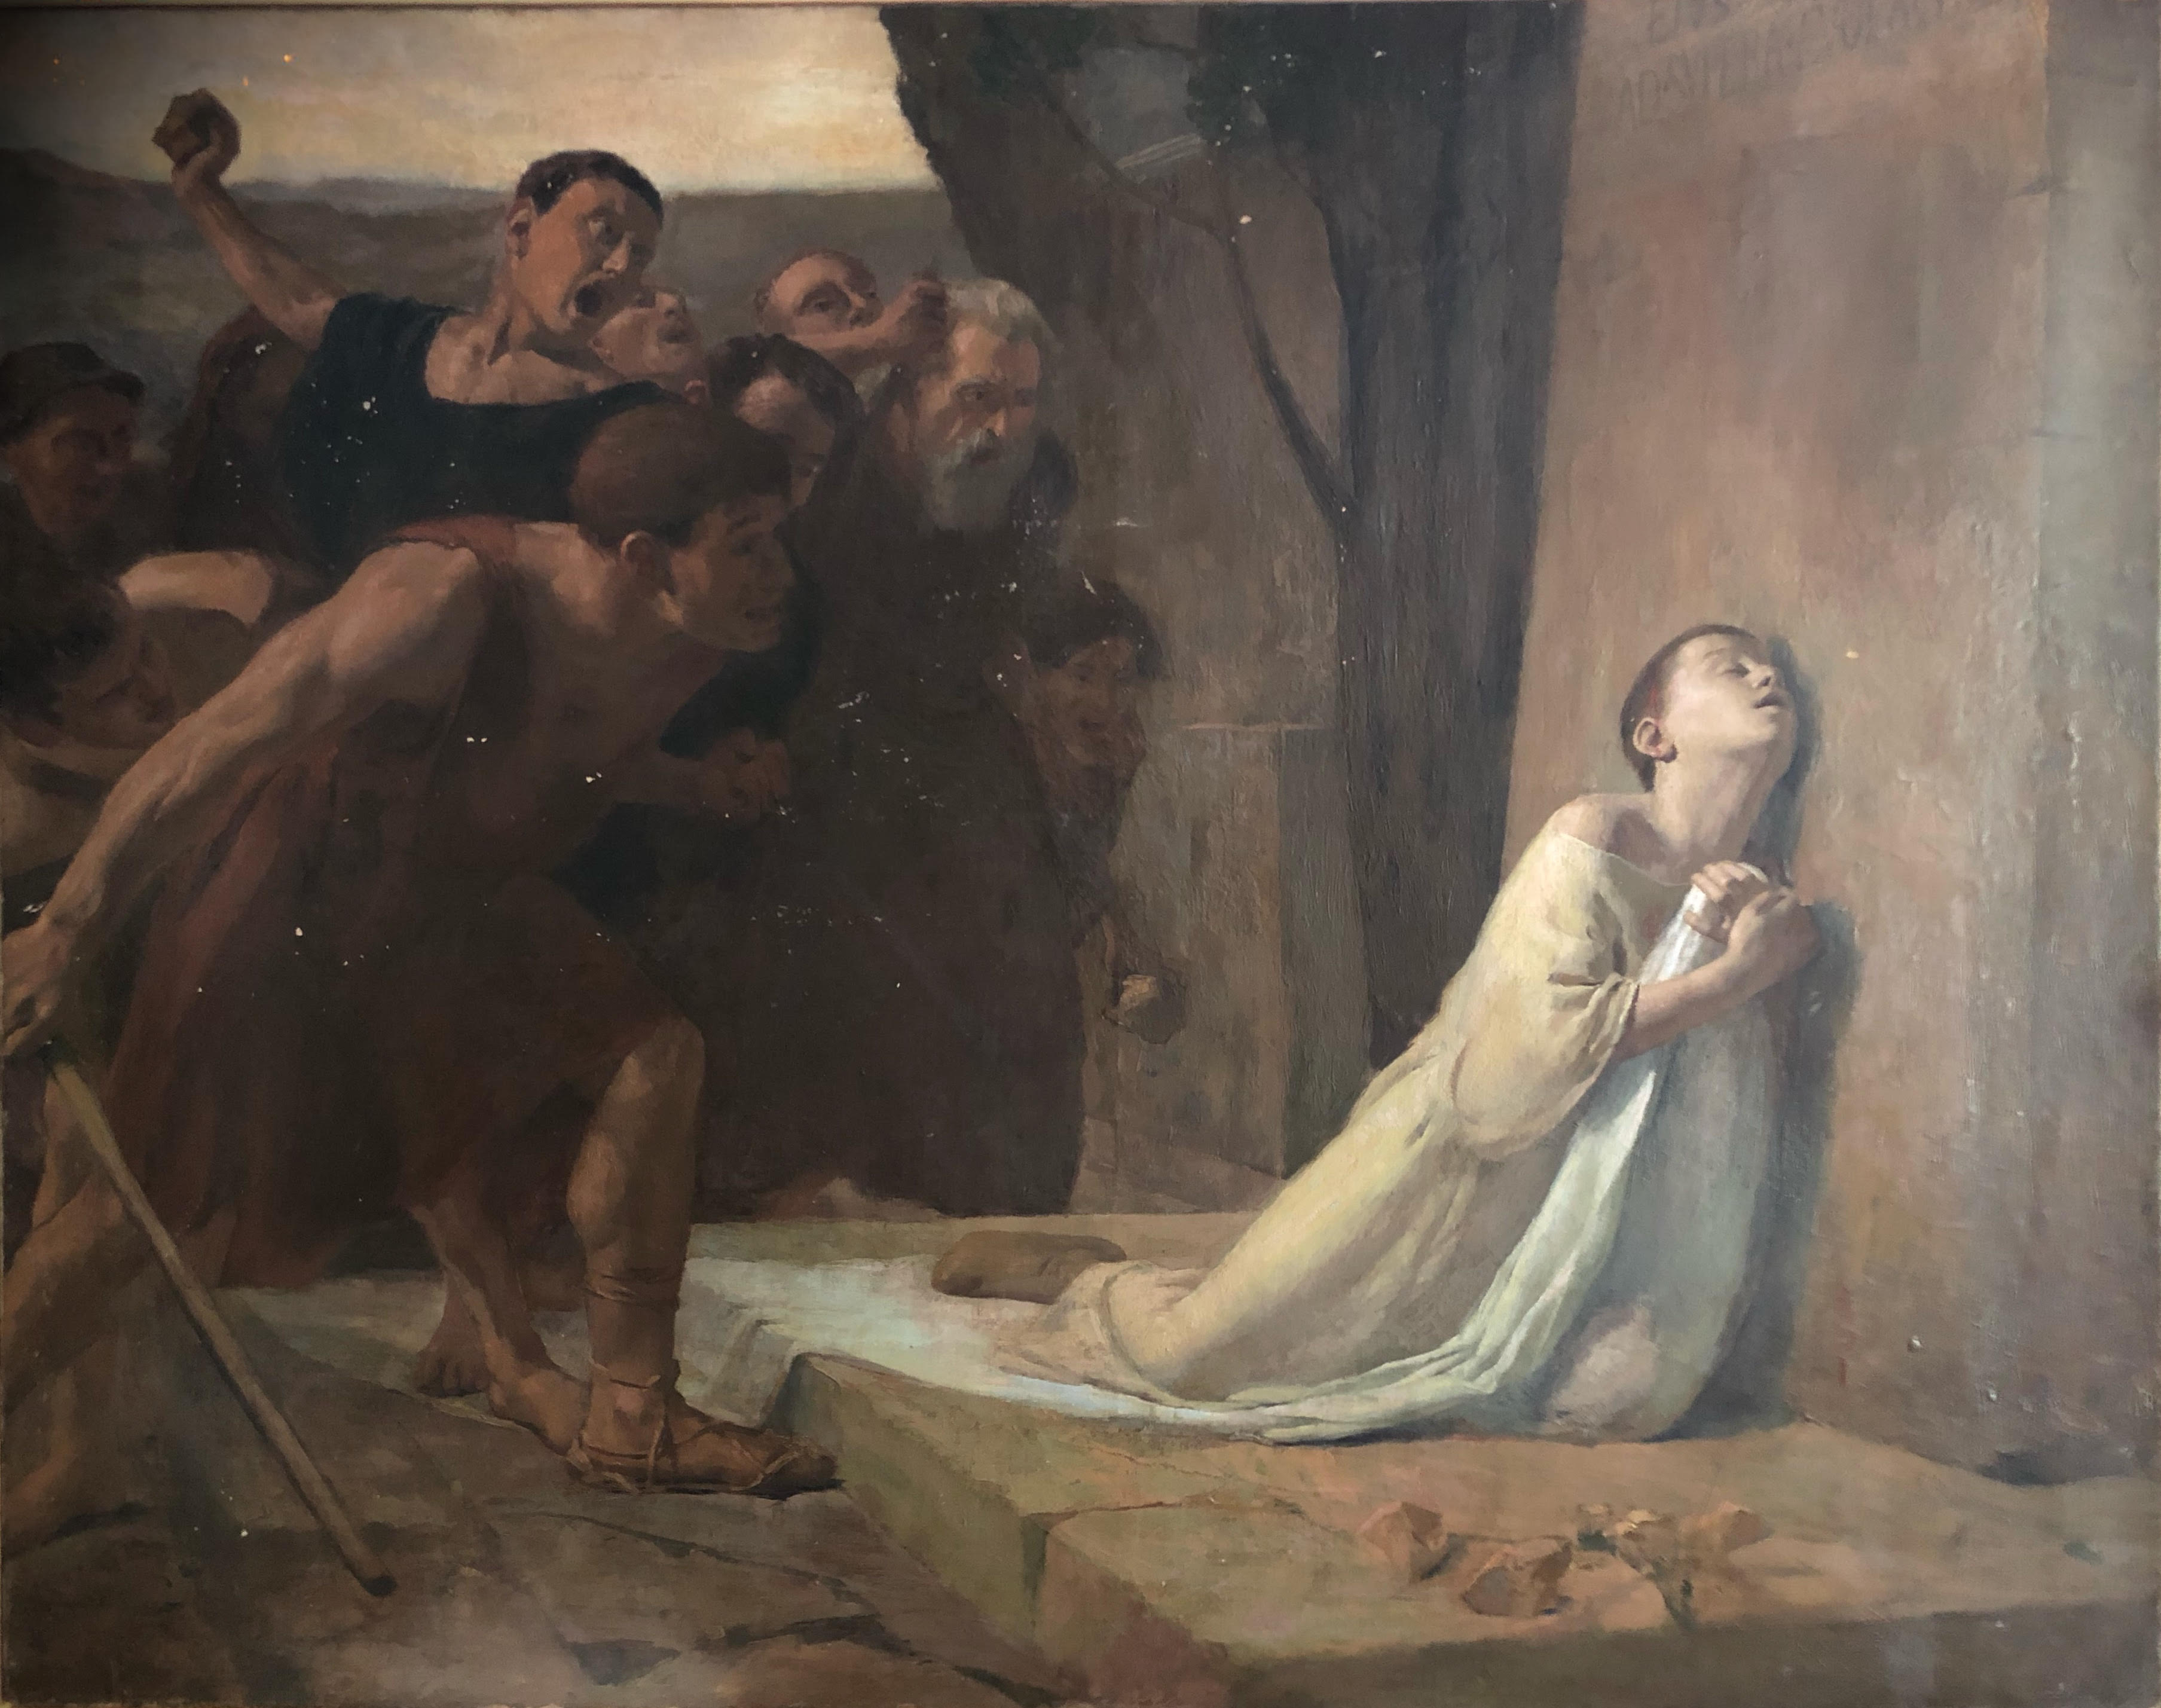 Le martyre de saint Tarcise